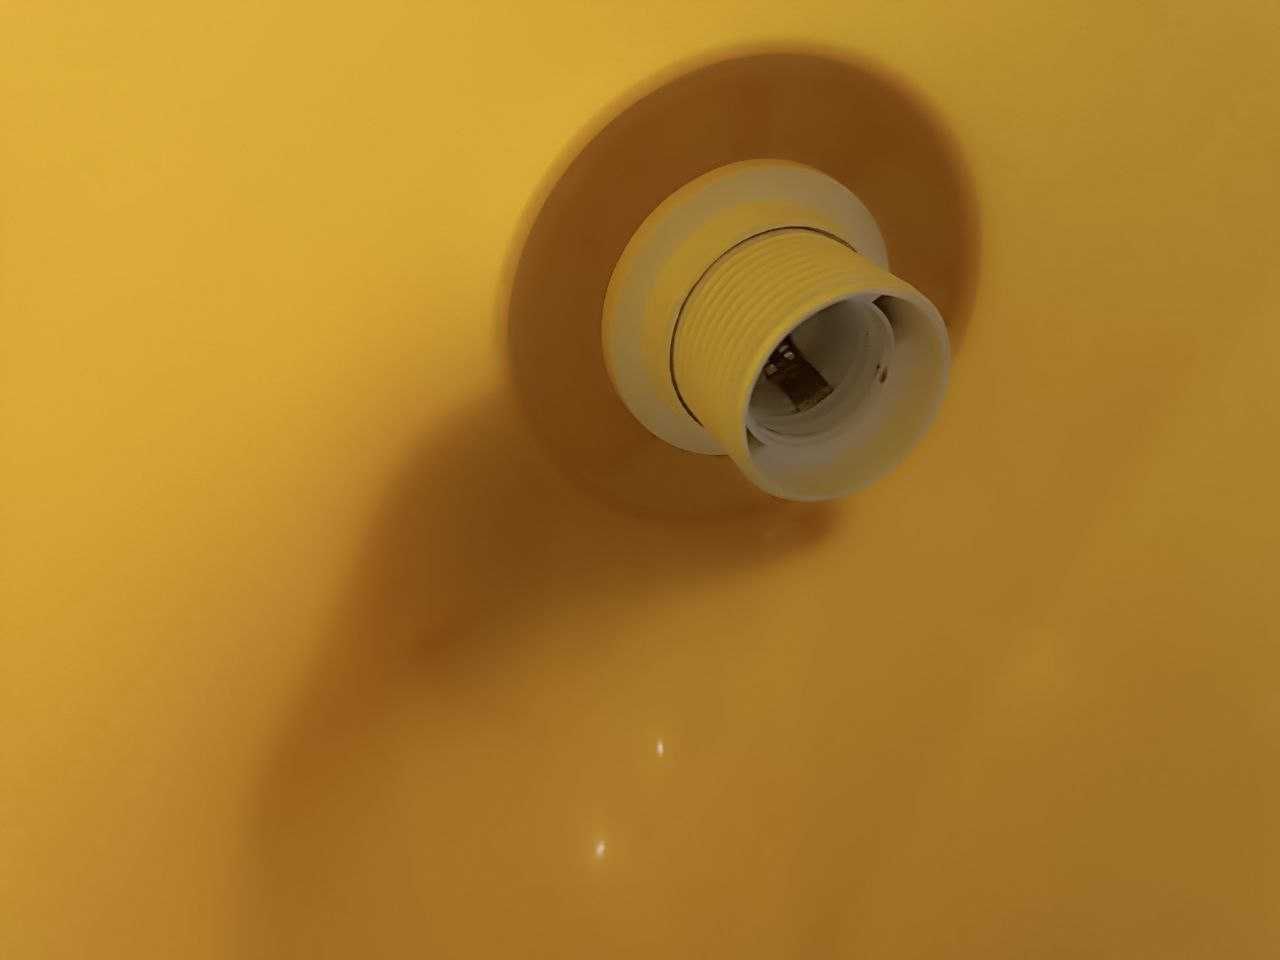 Світильник ( люстра)  декоративний стельовий жовтий